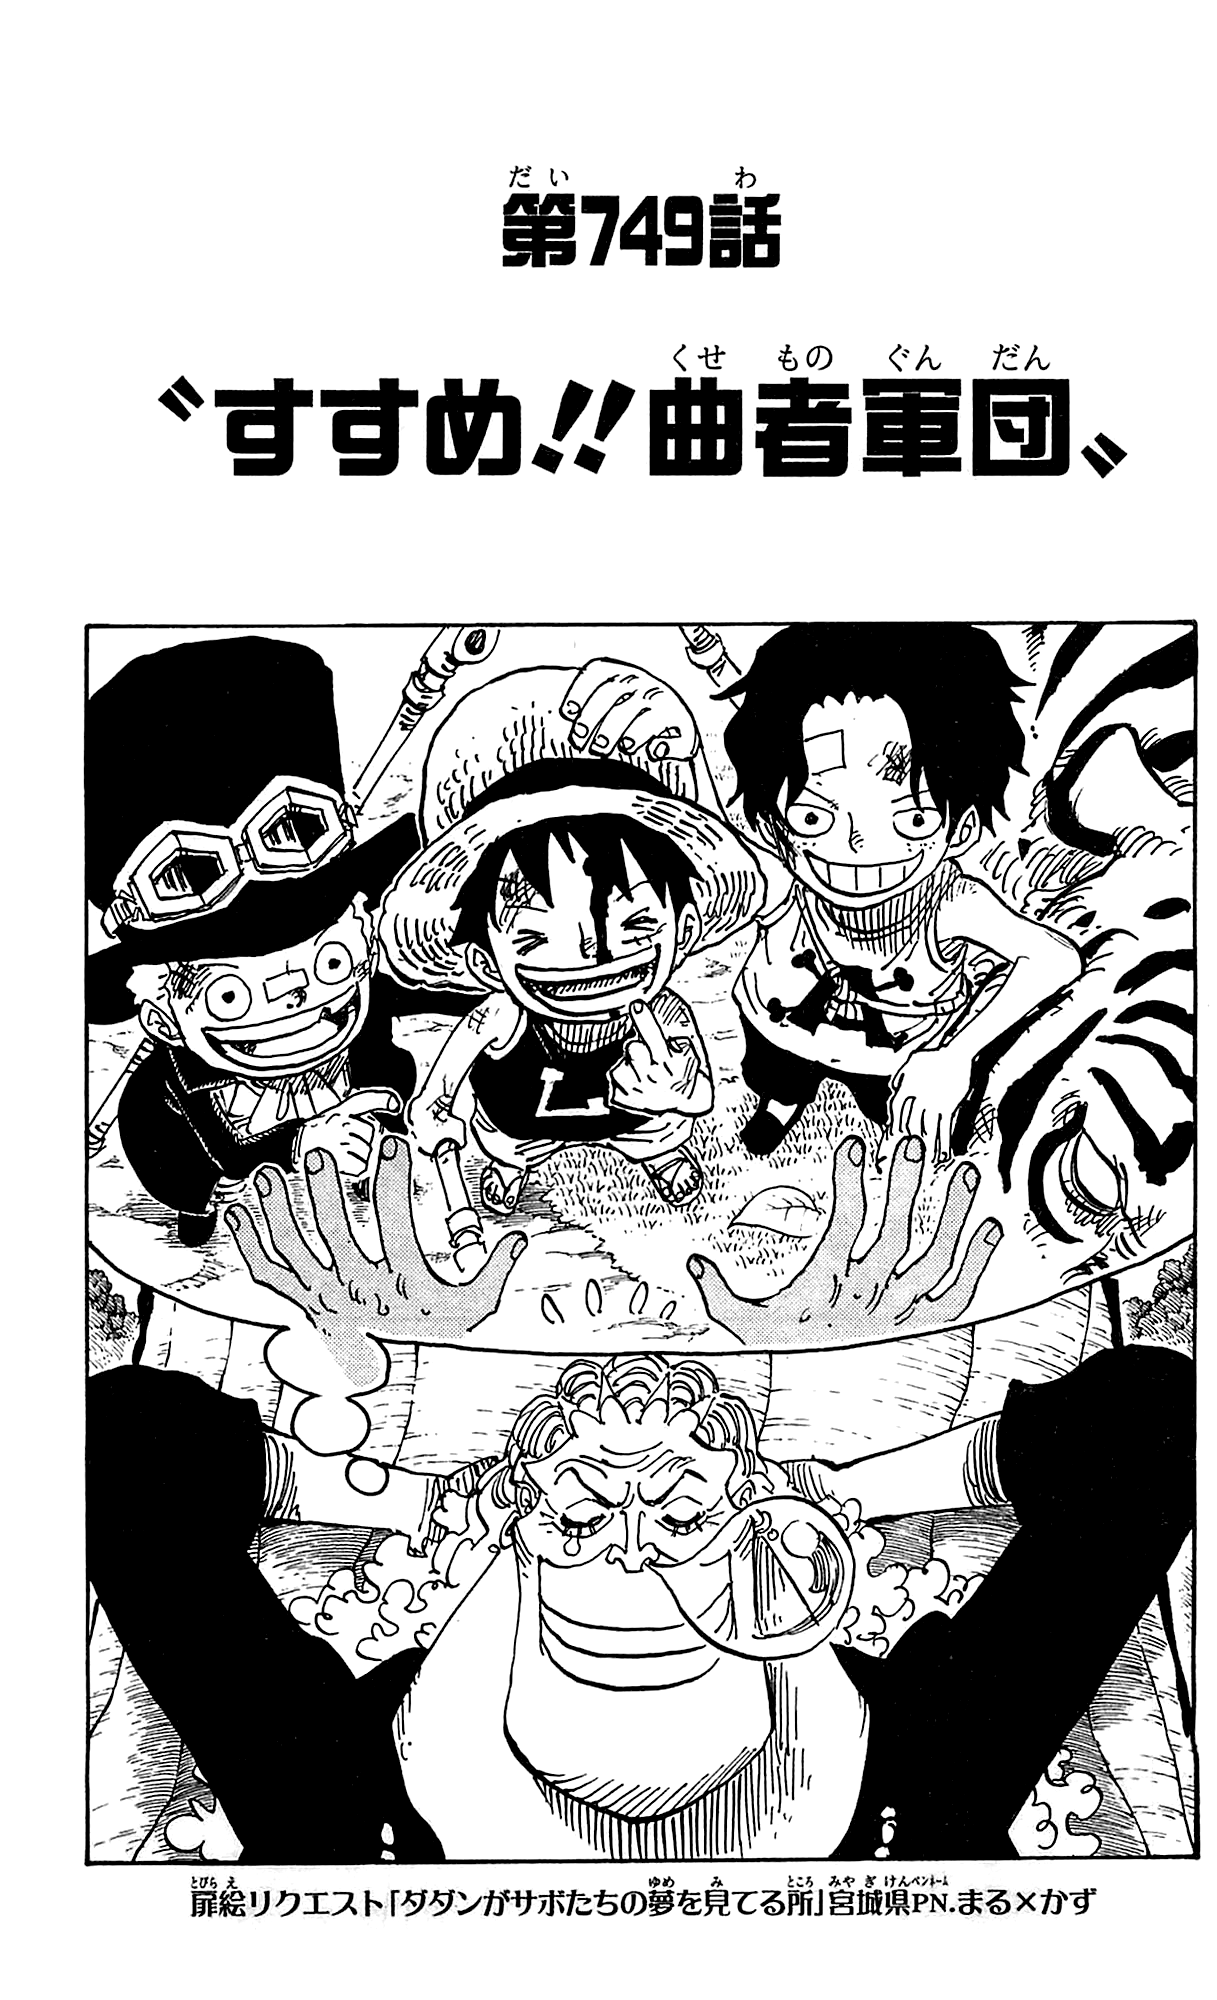 Chapter 749 One Piece Wiki Fandom